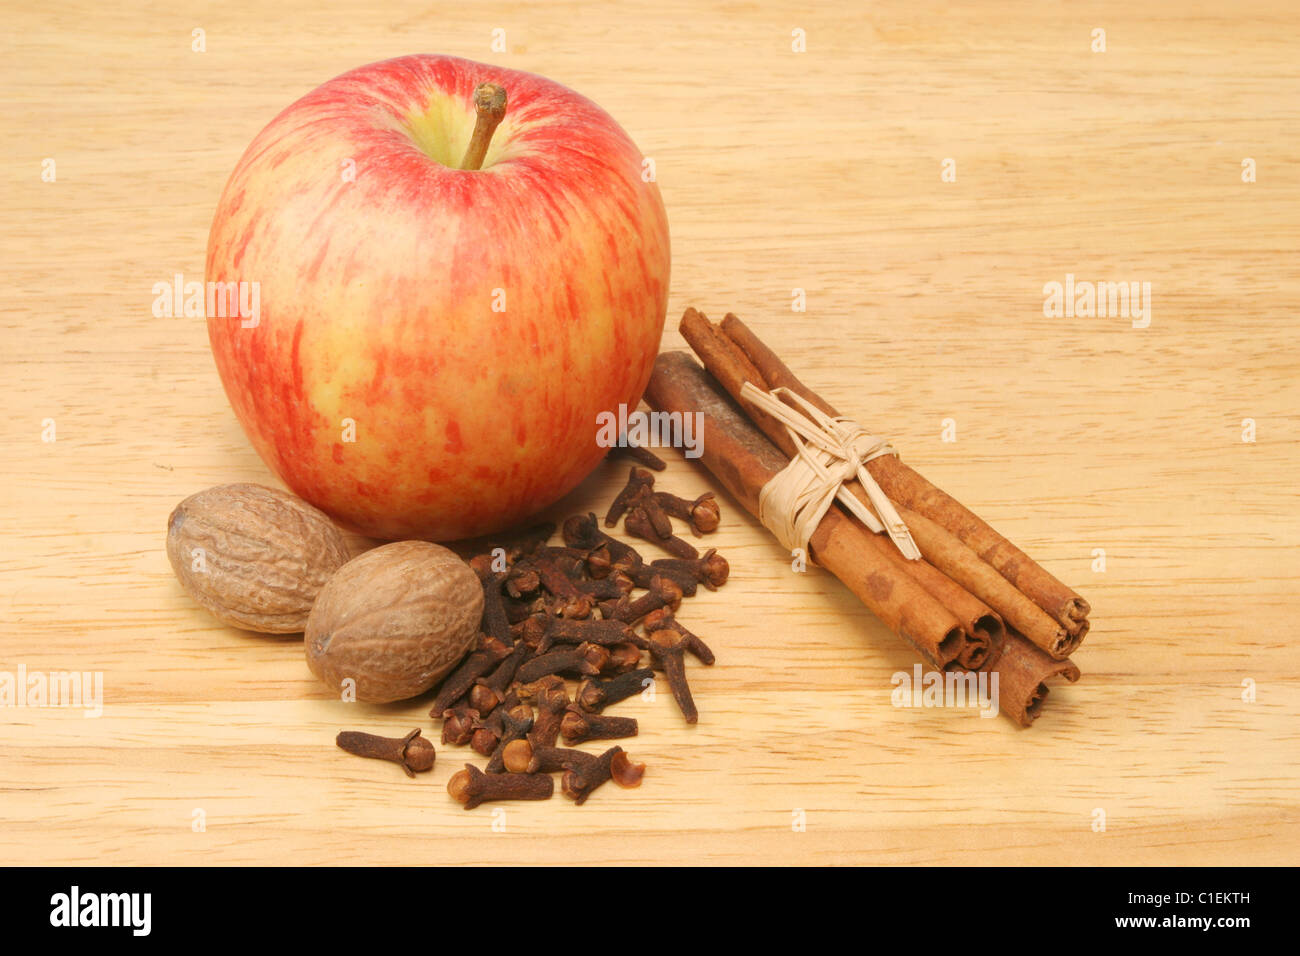 La pomme et les épices sur planche de bois Banque D'Images